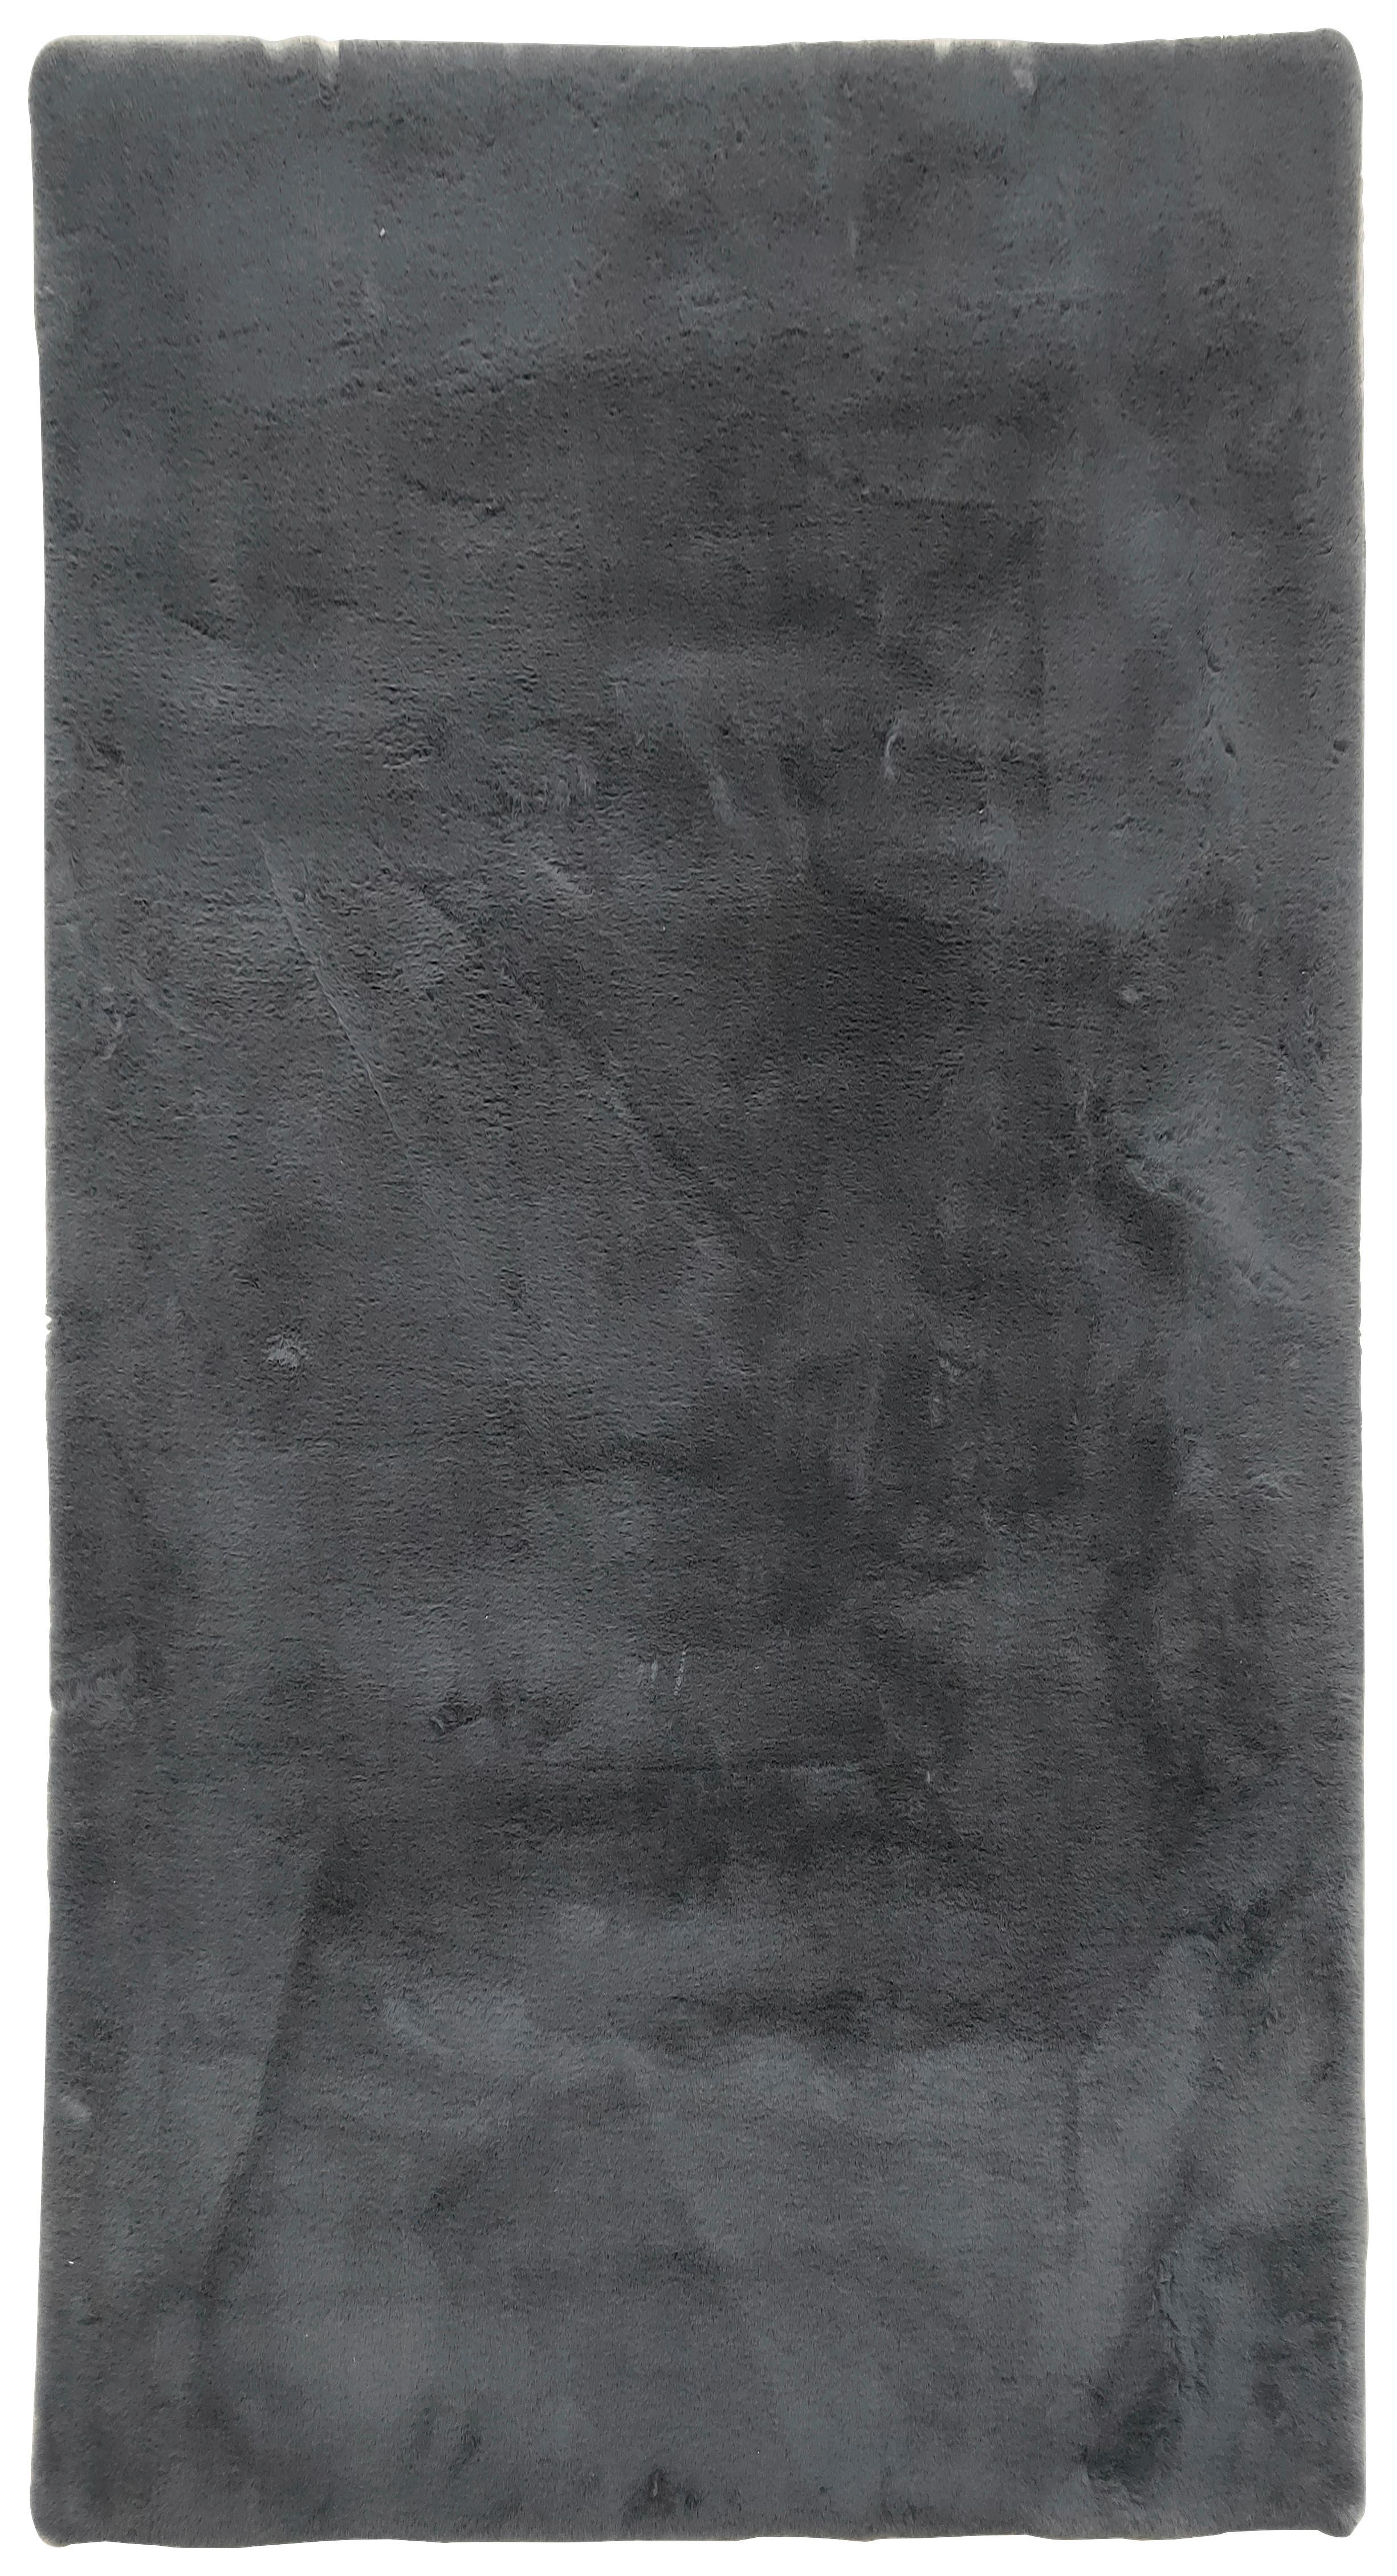 Kunstfell Caroline 1 in Beige ca.80x150cm - Anthrazit, Textil (80/150cm) - Modern Living